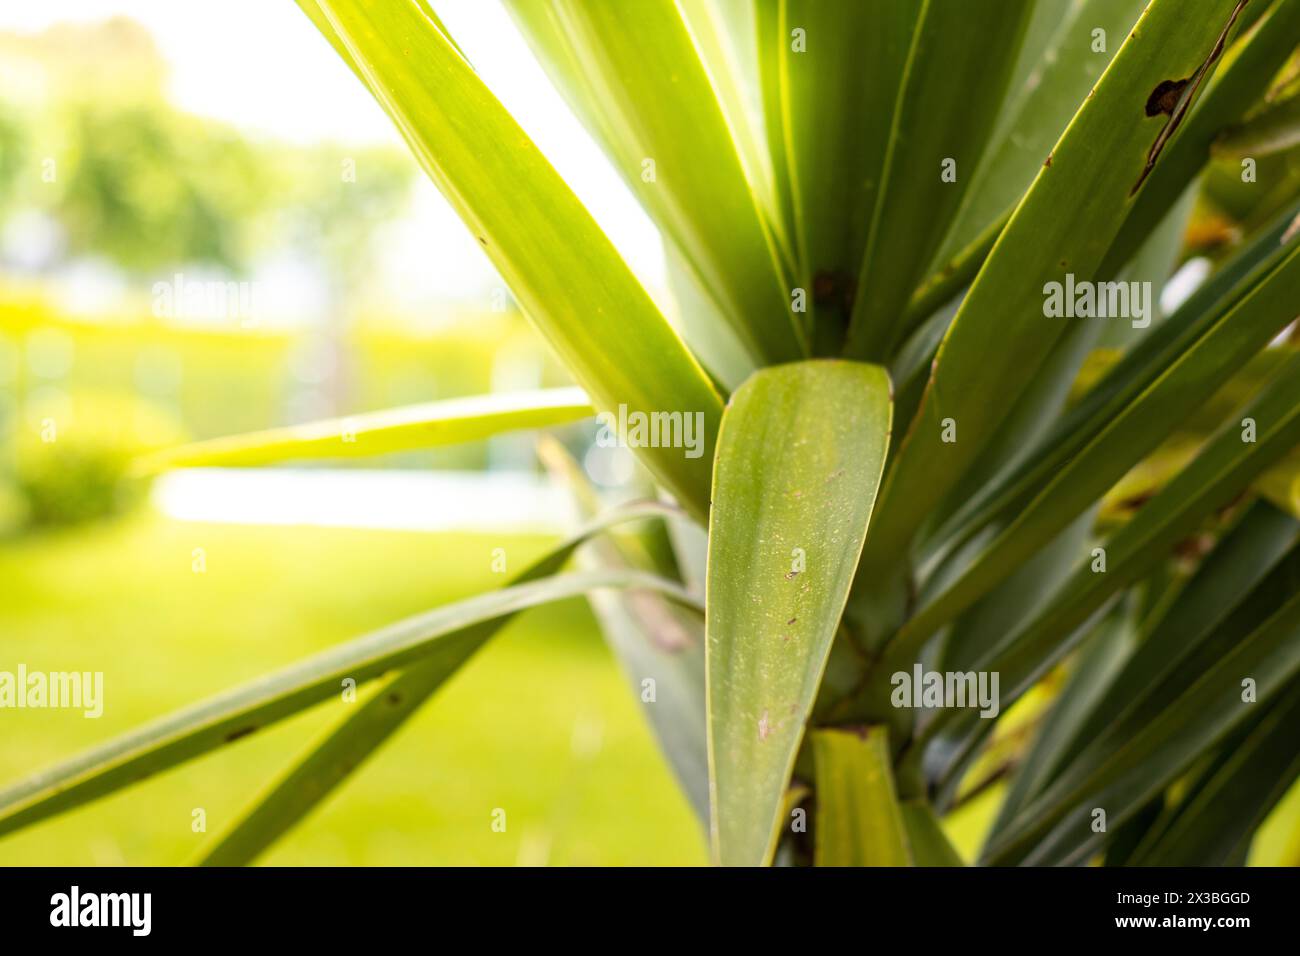 Sfoca splendide foglie verdi di palma con luce solare bokeh, sfondo astratto. Copia dello spazio del concetto di vacanza estiva e viaggio d'affari. Foto Stock